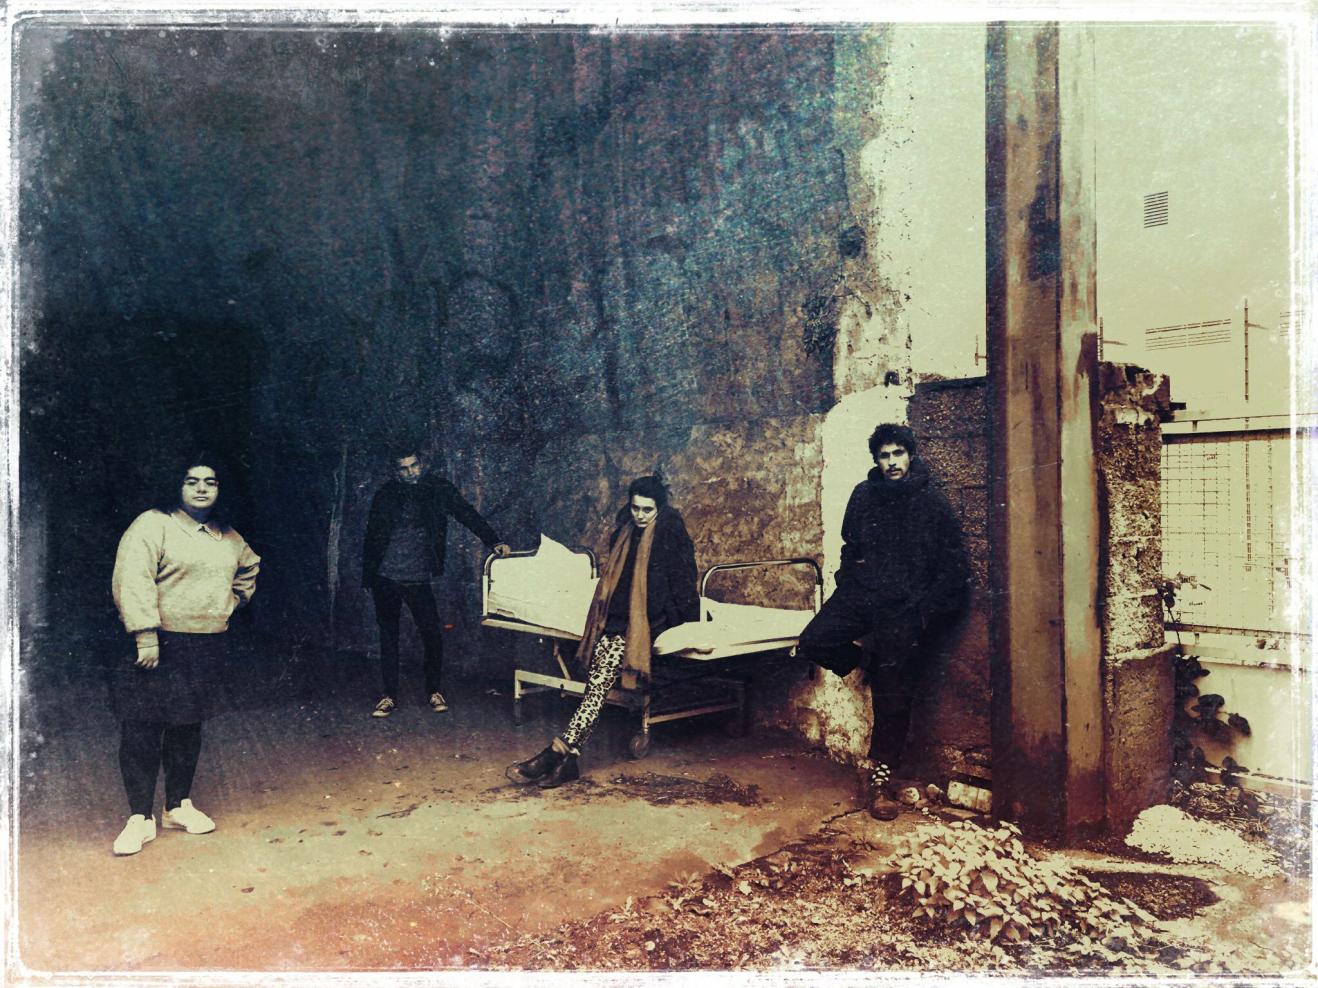 Foto in Vintage-Optik, auf dem vier Personen vor einer alten Lagerhalle stehen.